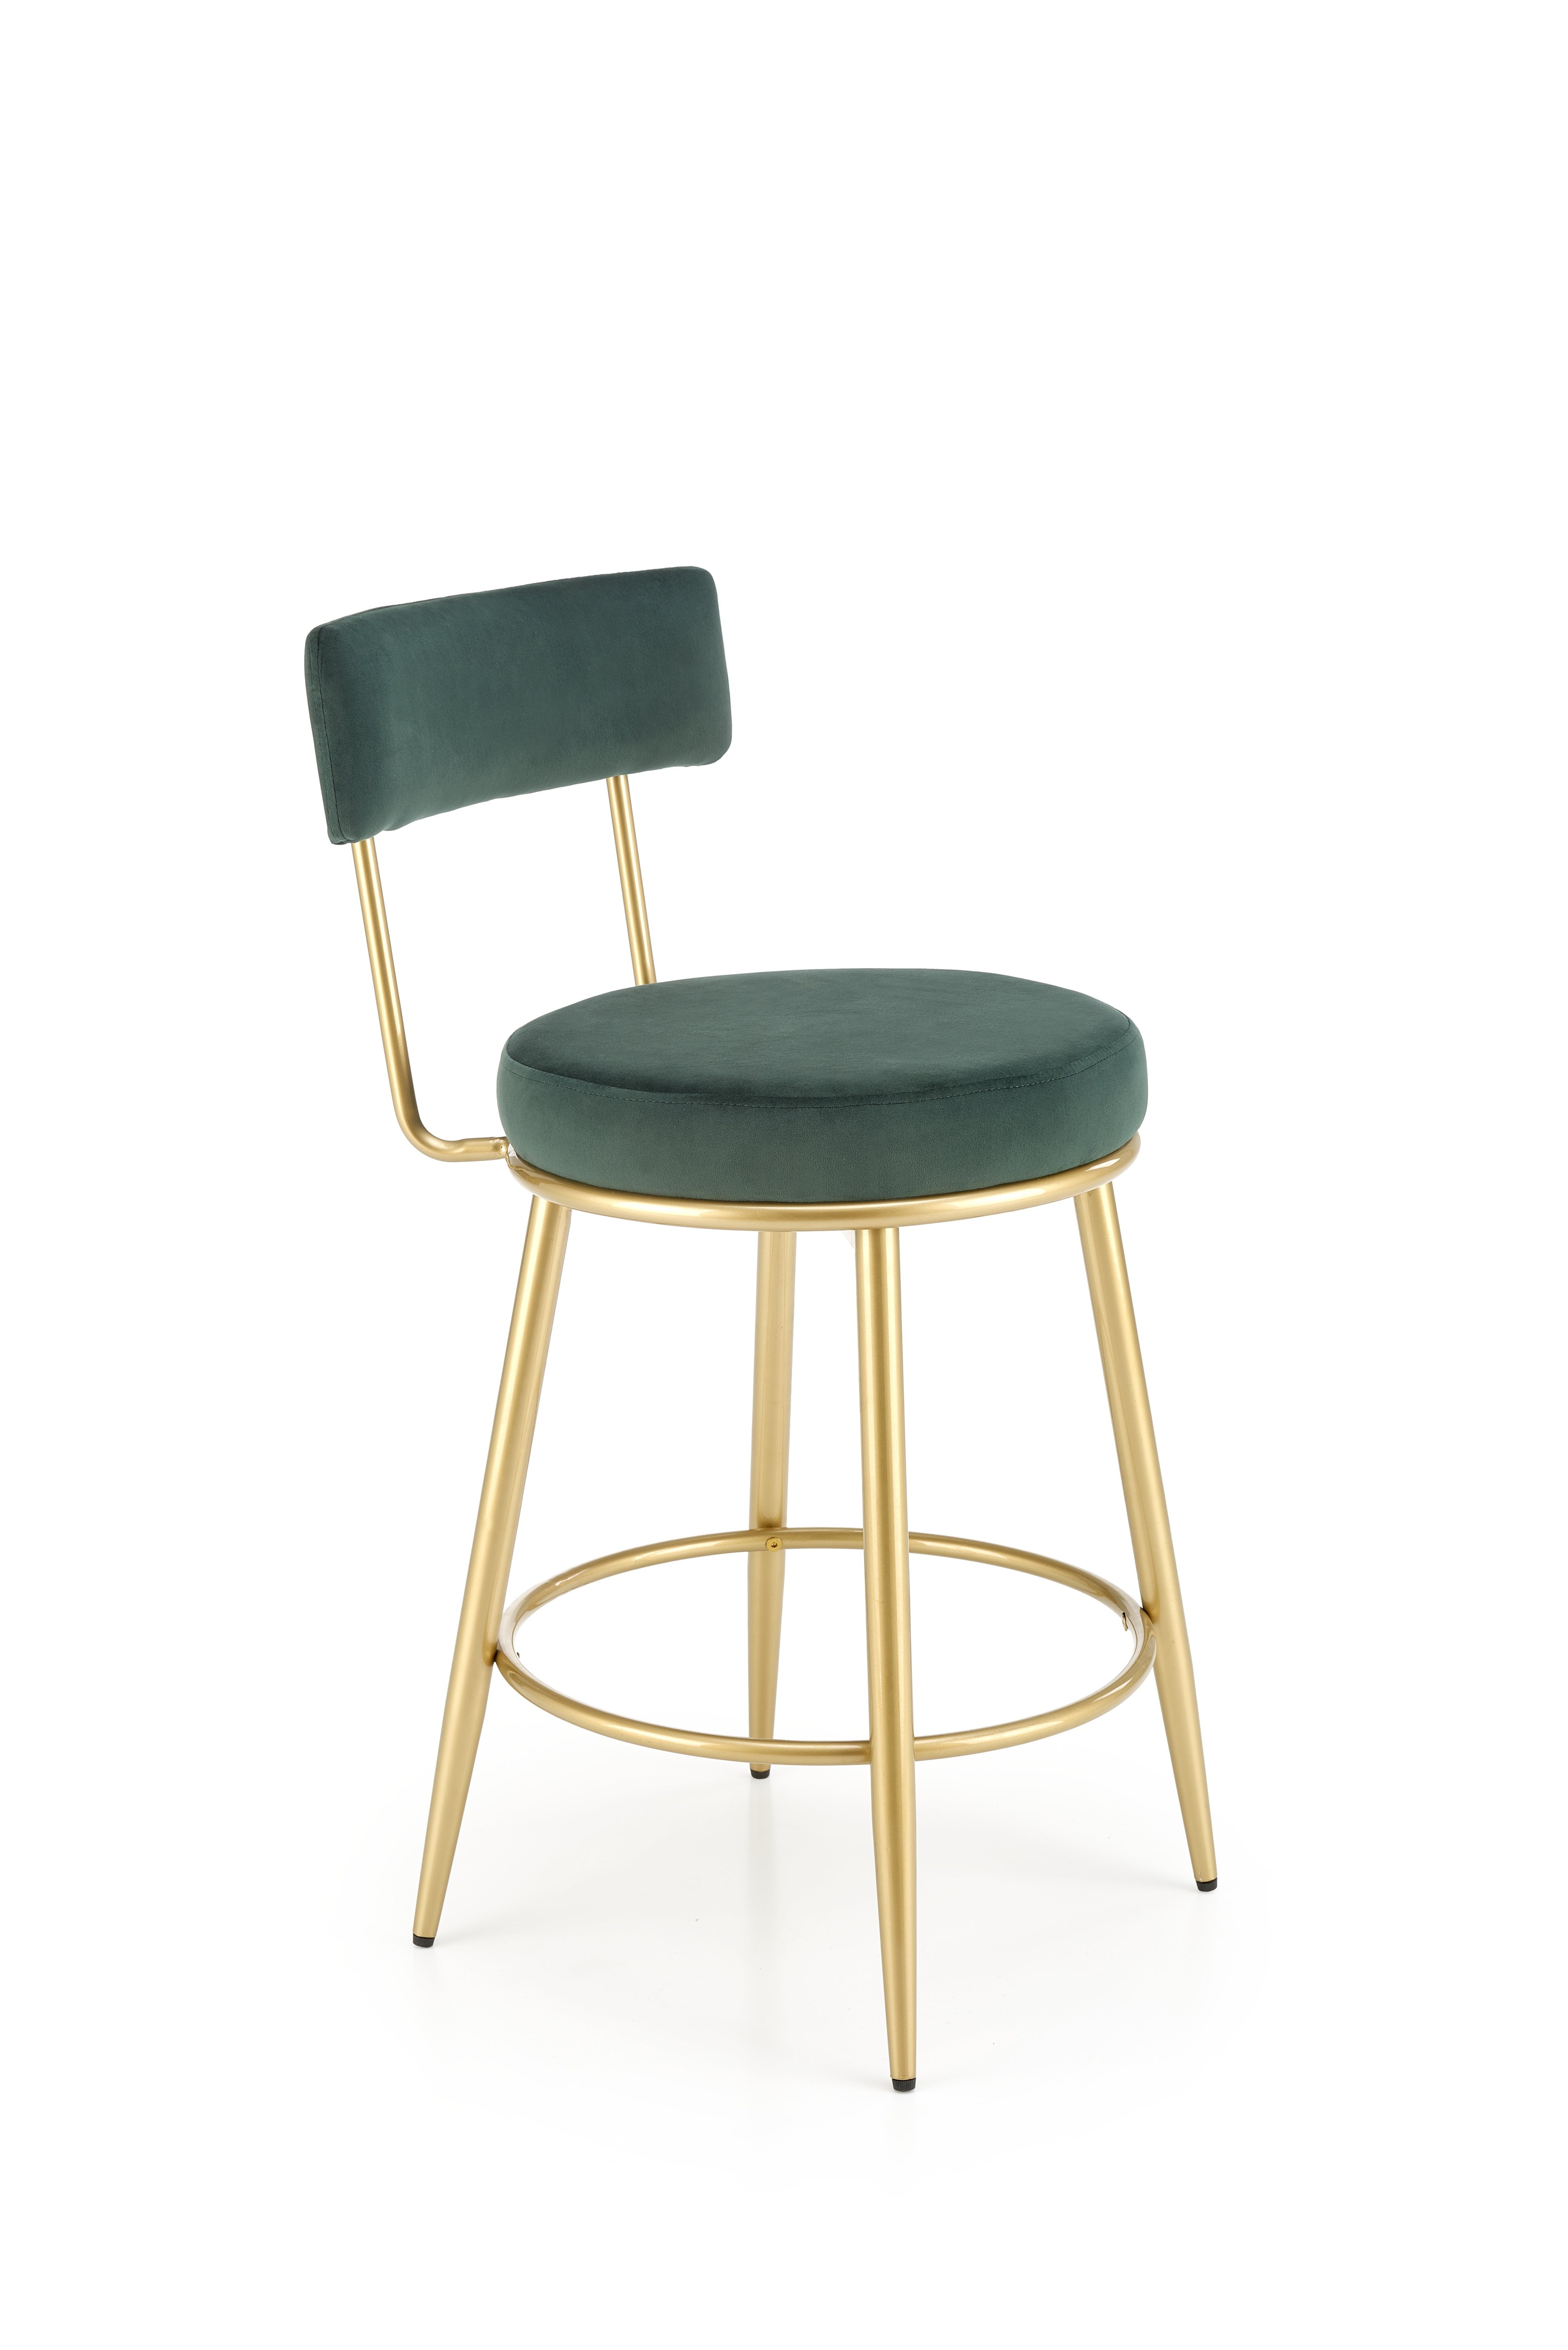 H115 Barová stolička tmavý Zelený / zlaté h115 Barová stolička tmavý Zelený / zlaté